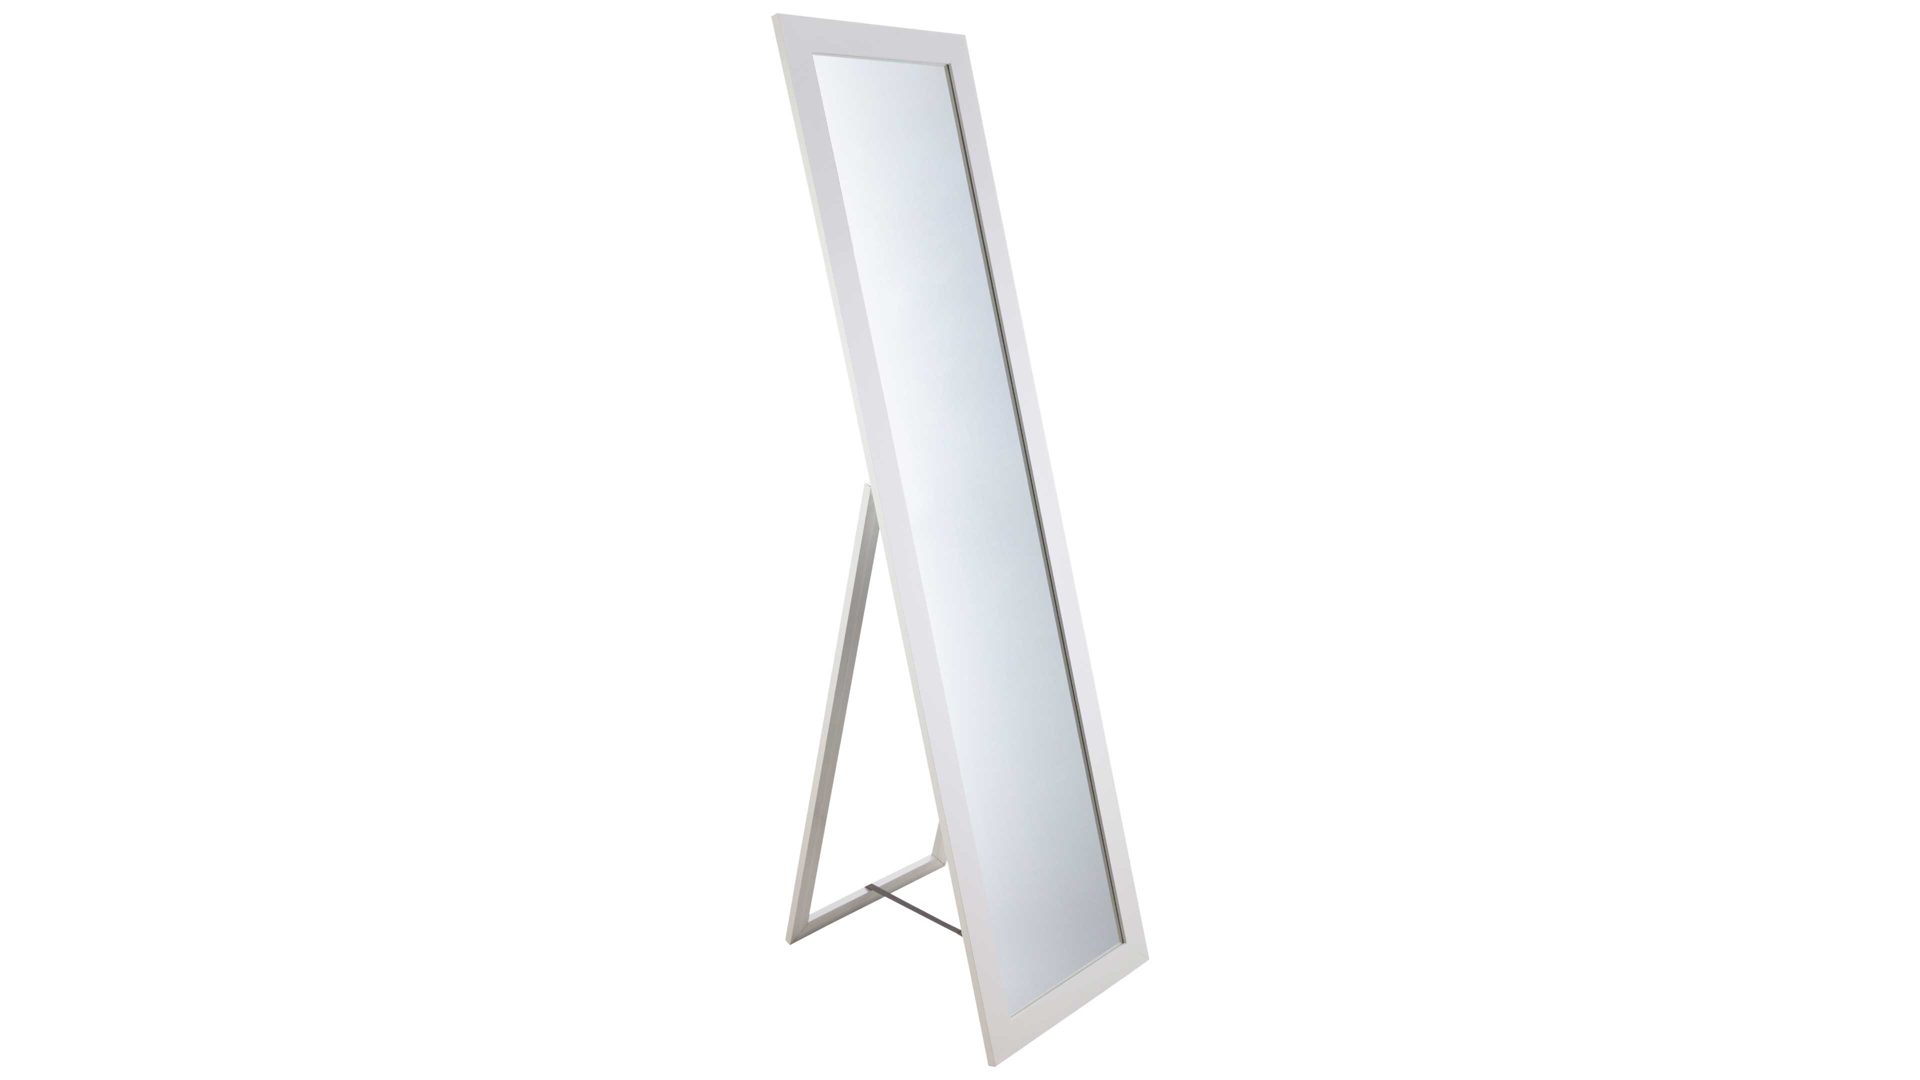 Standspiegel Spiegelprofi aus Spiegel in Weiß Rahmen-Standspiegel Emilia weißer Rahmen & Fuß – Höhe ca. 160 cm